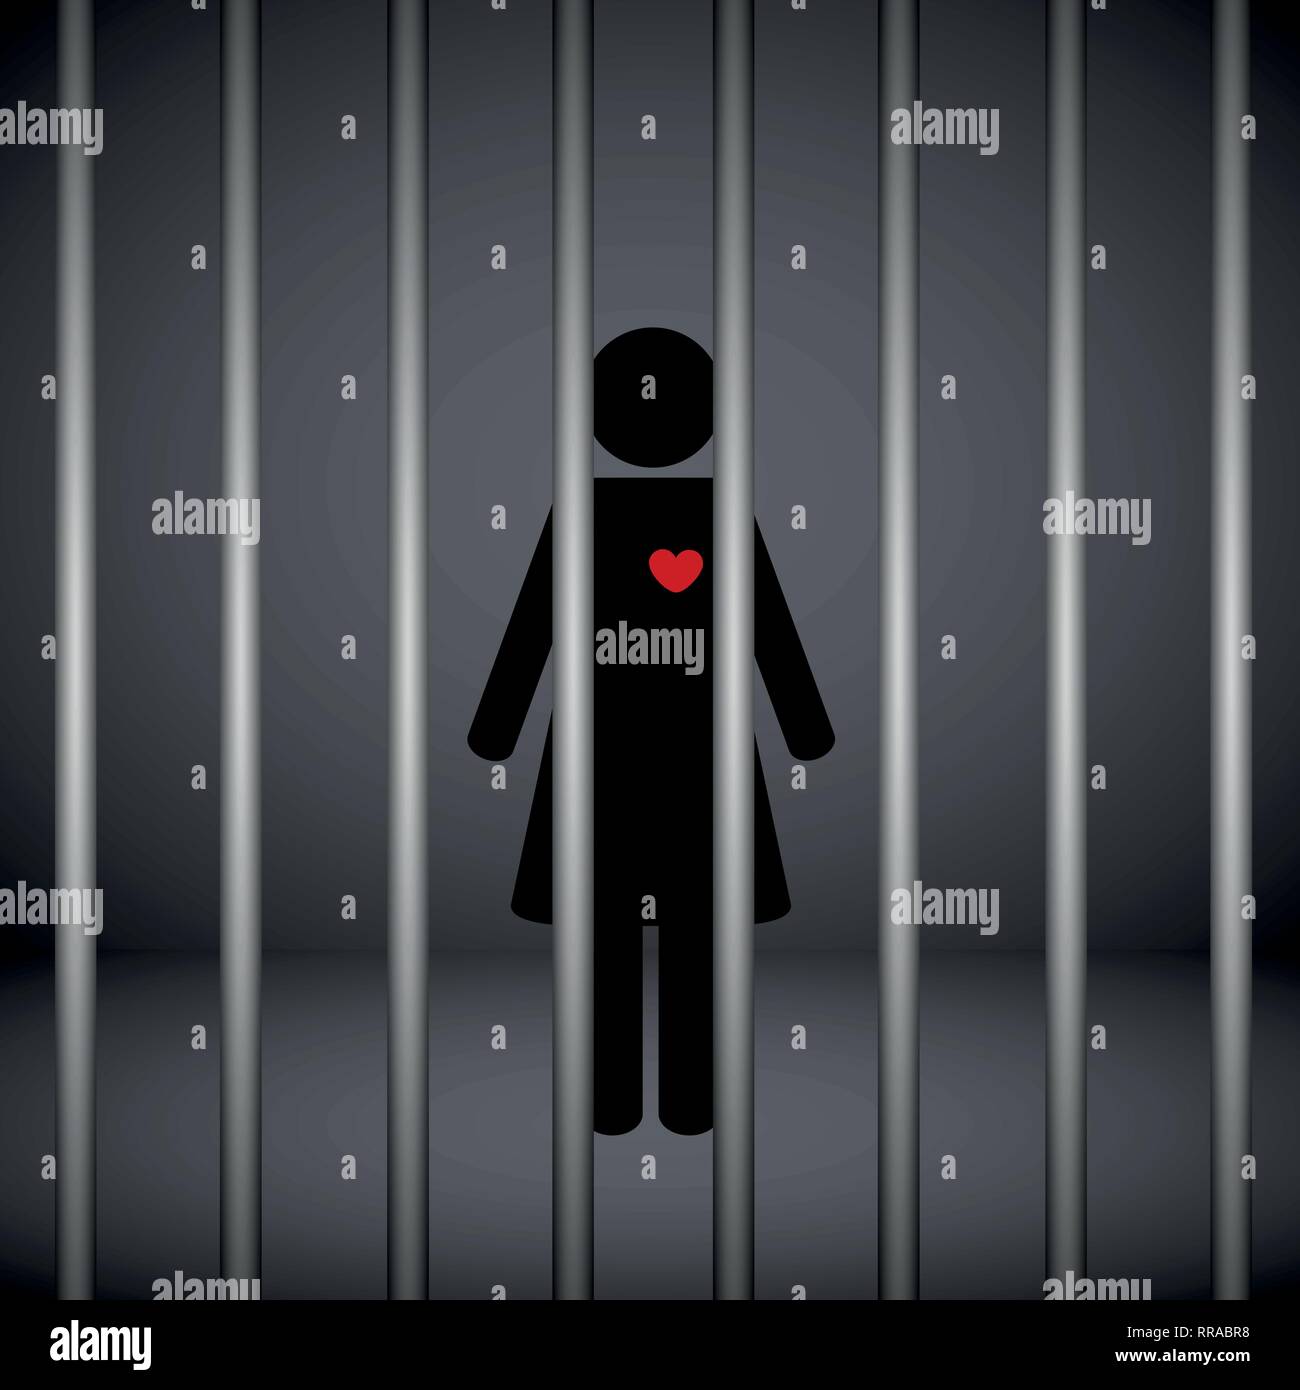 Frau mit roten Herzen im Gefängnis auf dunklem Hintergrund Vektor-illustration EPS 10. Stock Vektor